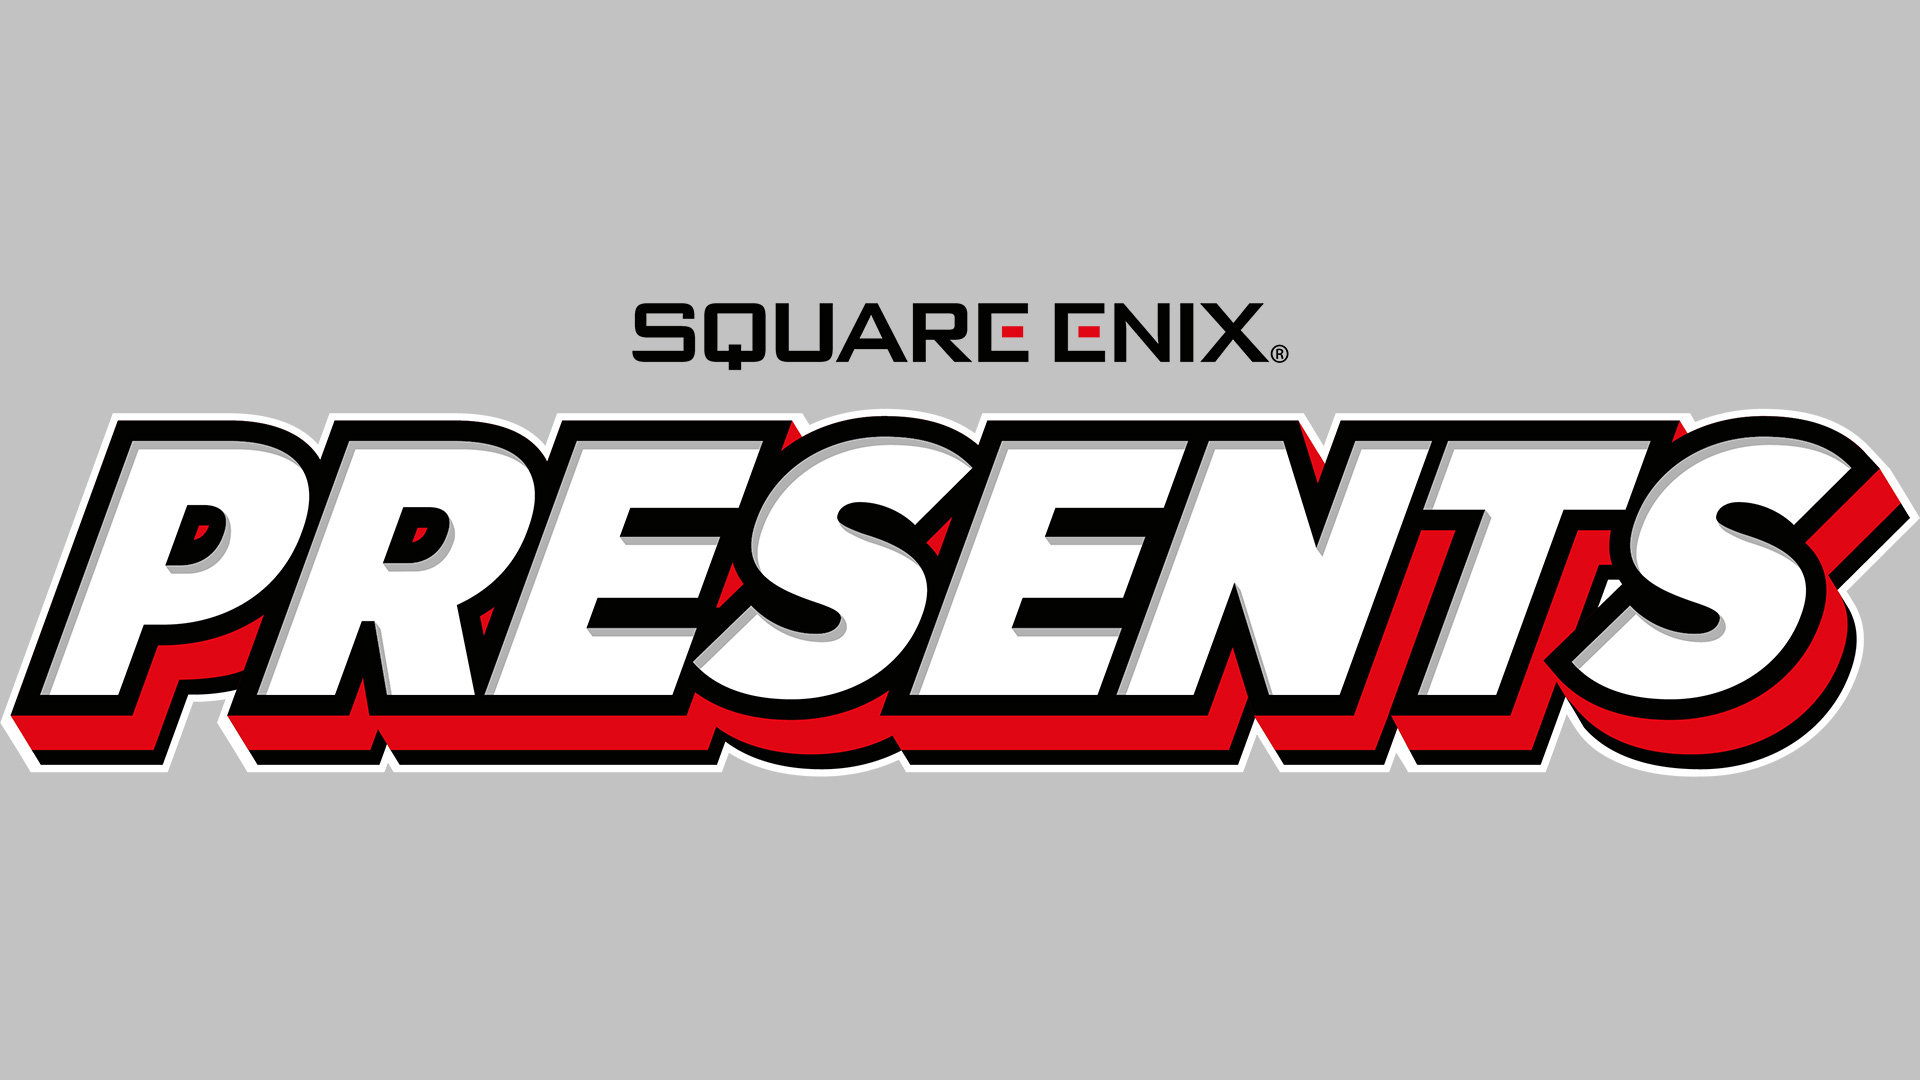 Square Enix Presents Hero Image